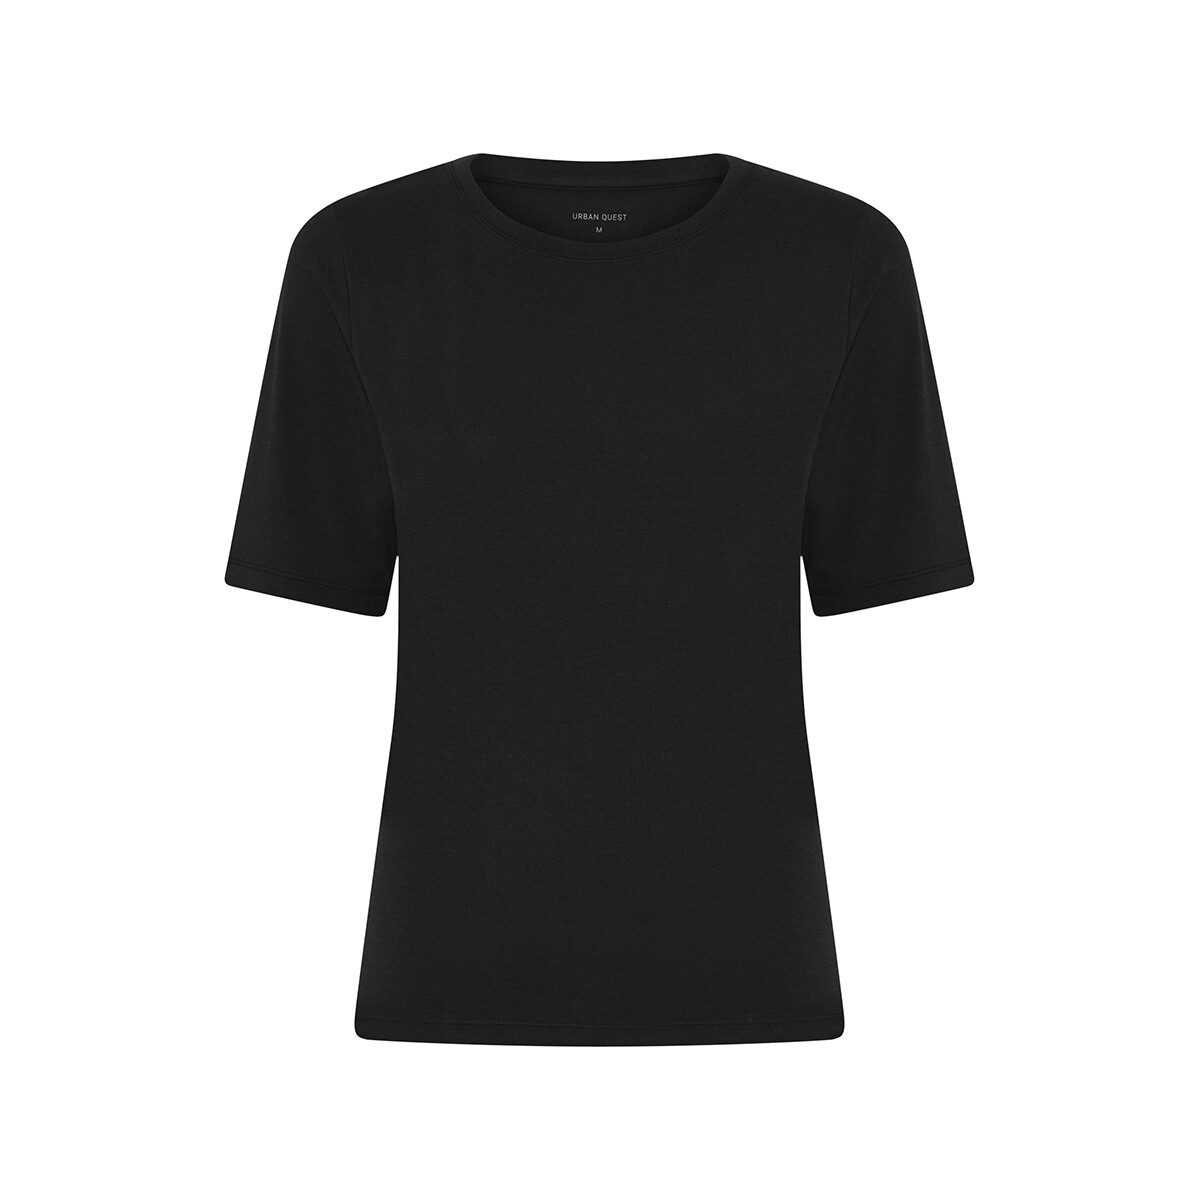 Se Urban Quest Bamboo Slim Fit T-shirt, Farve: Sort, Størrelse: XL, Dame hos Netlingeri.dk